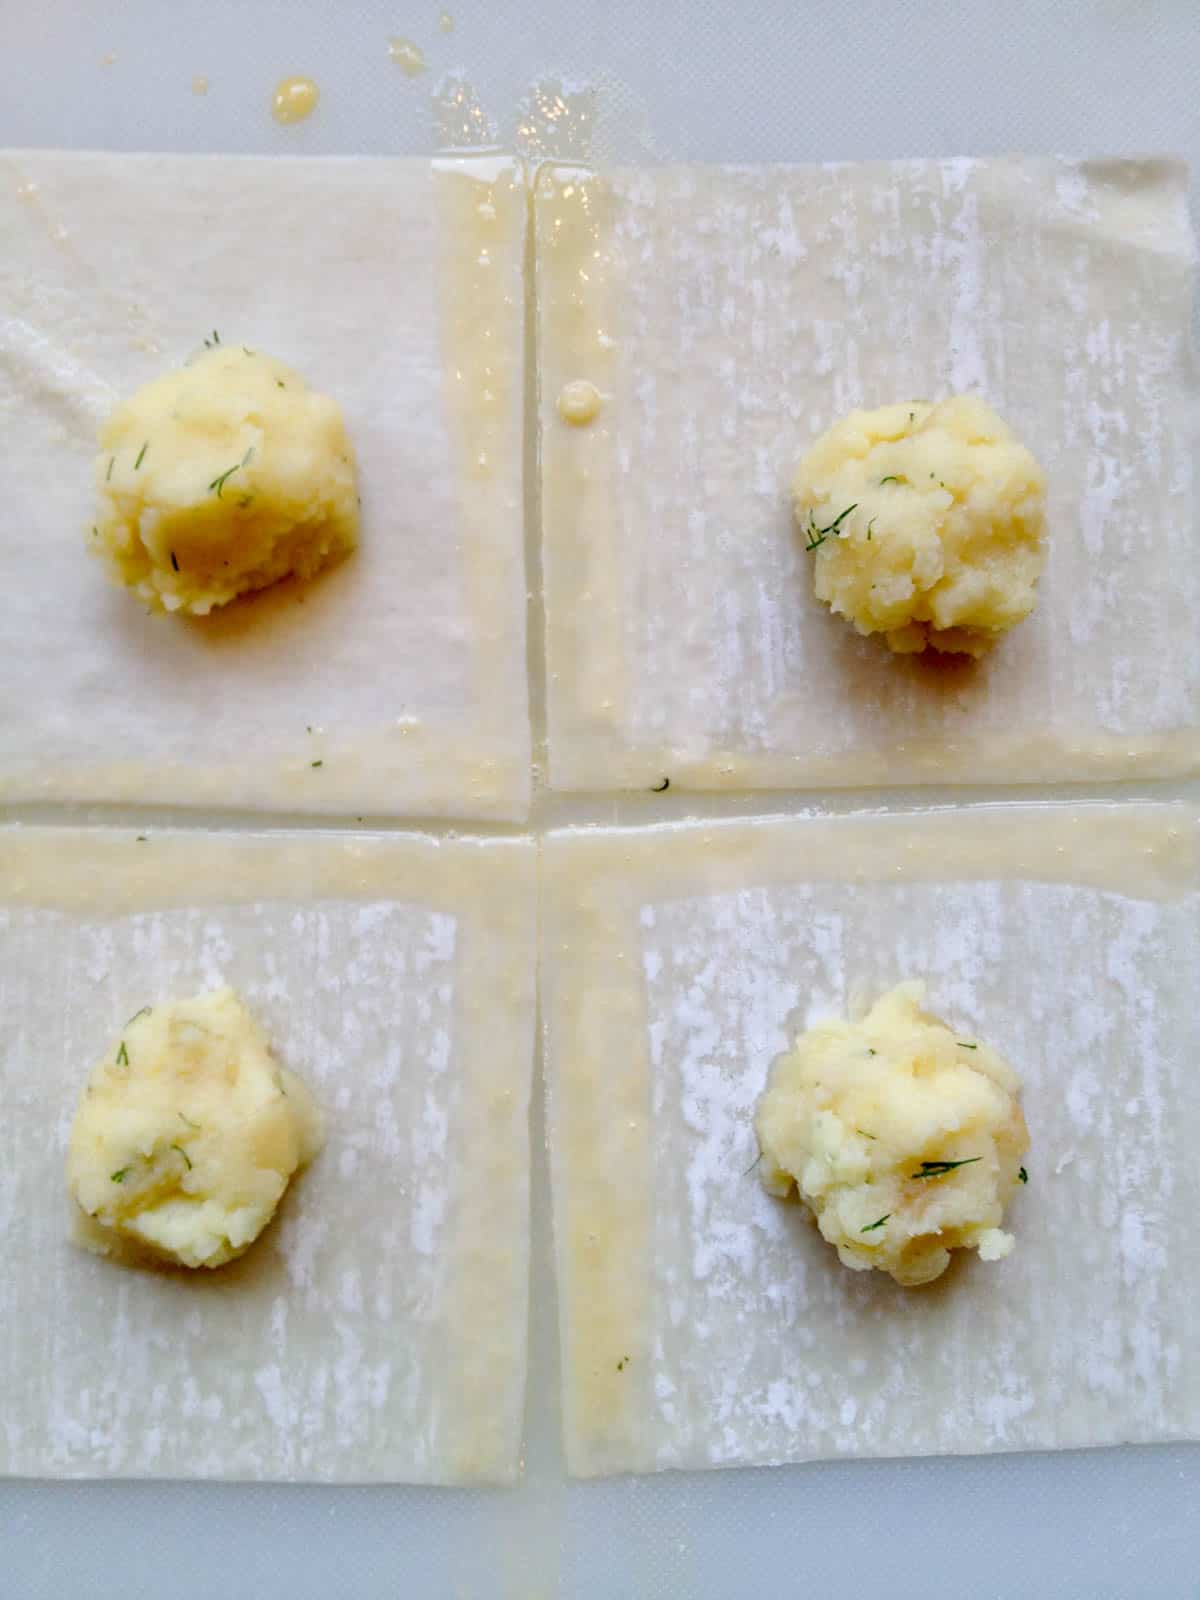 Wonton squares with potato filling.